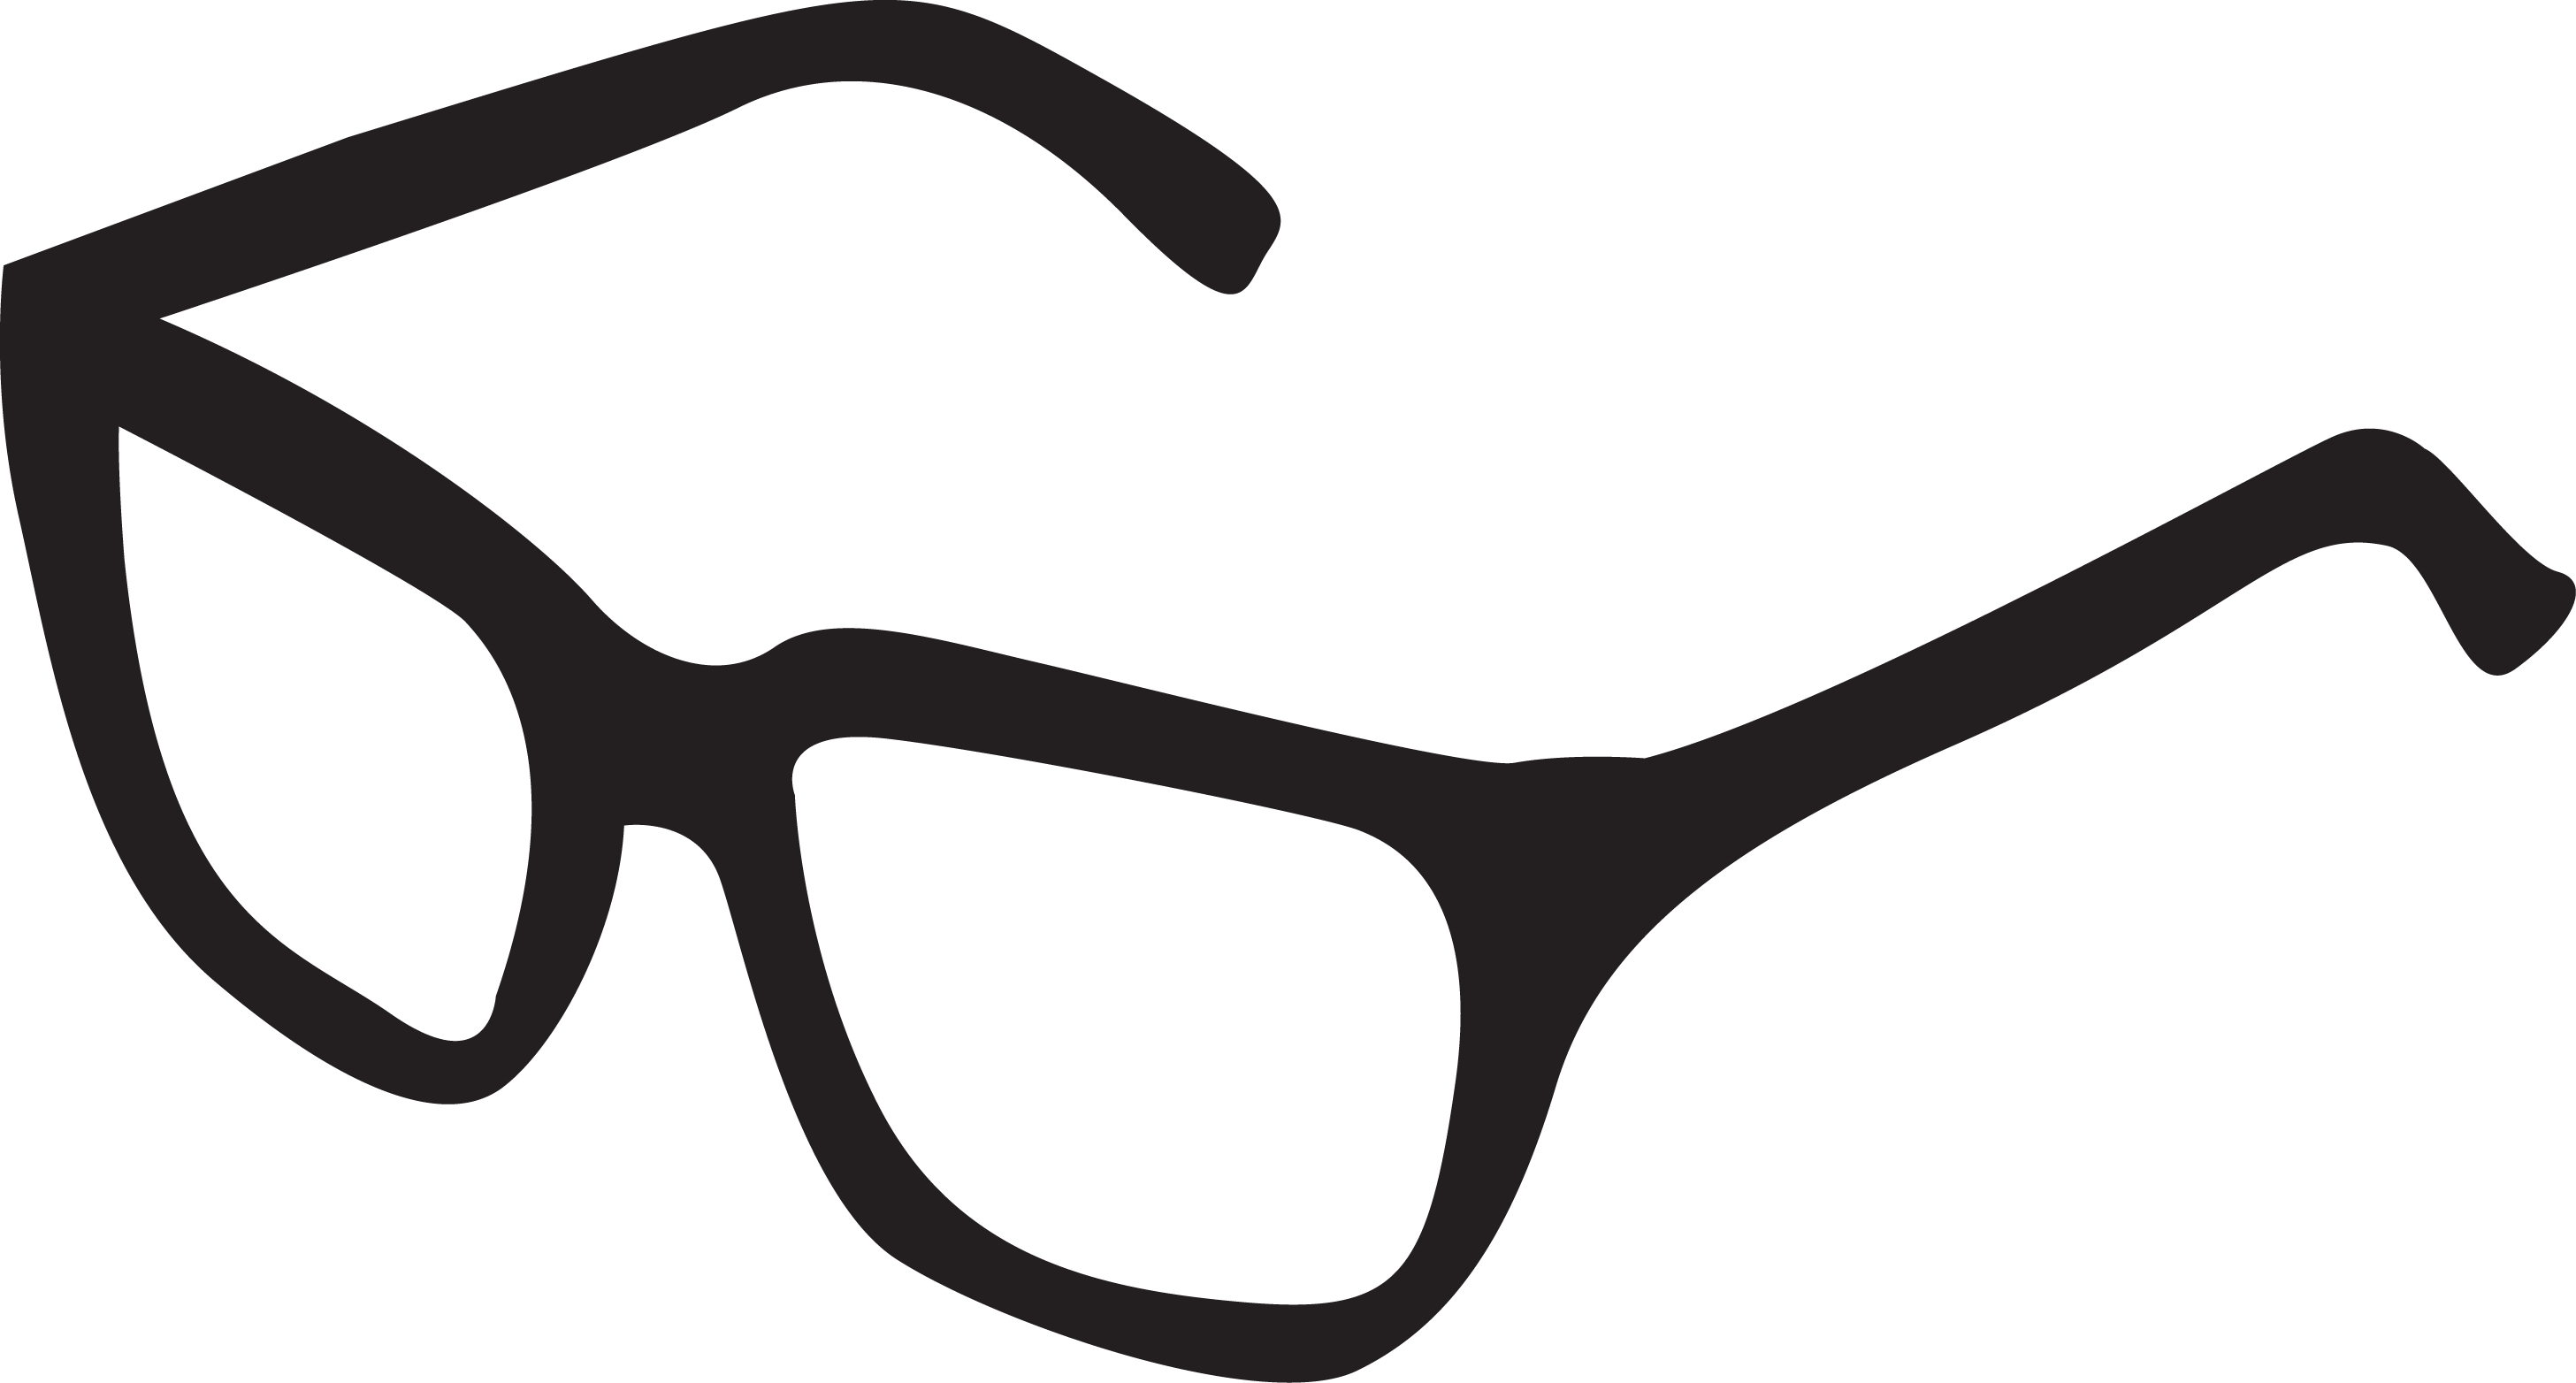 Kacamata